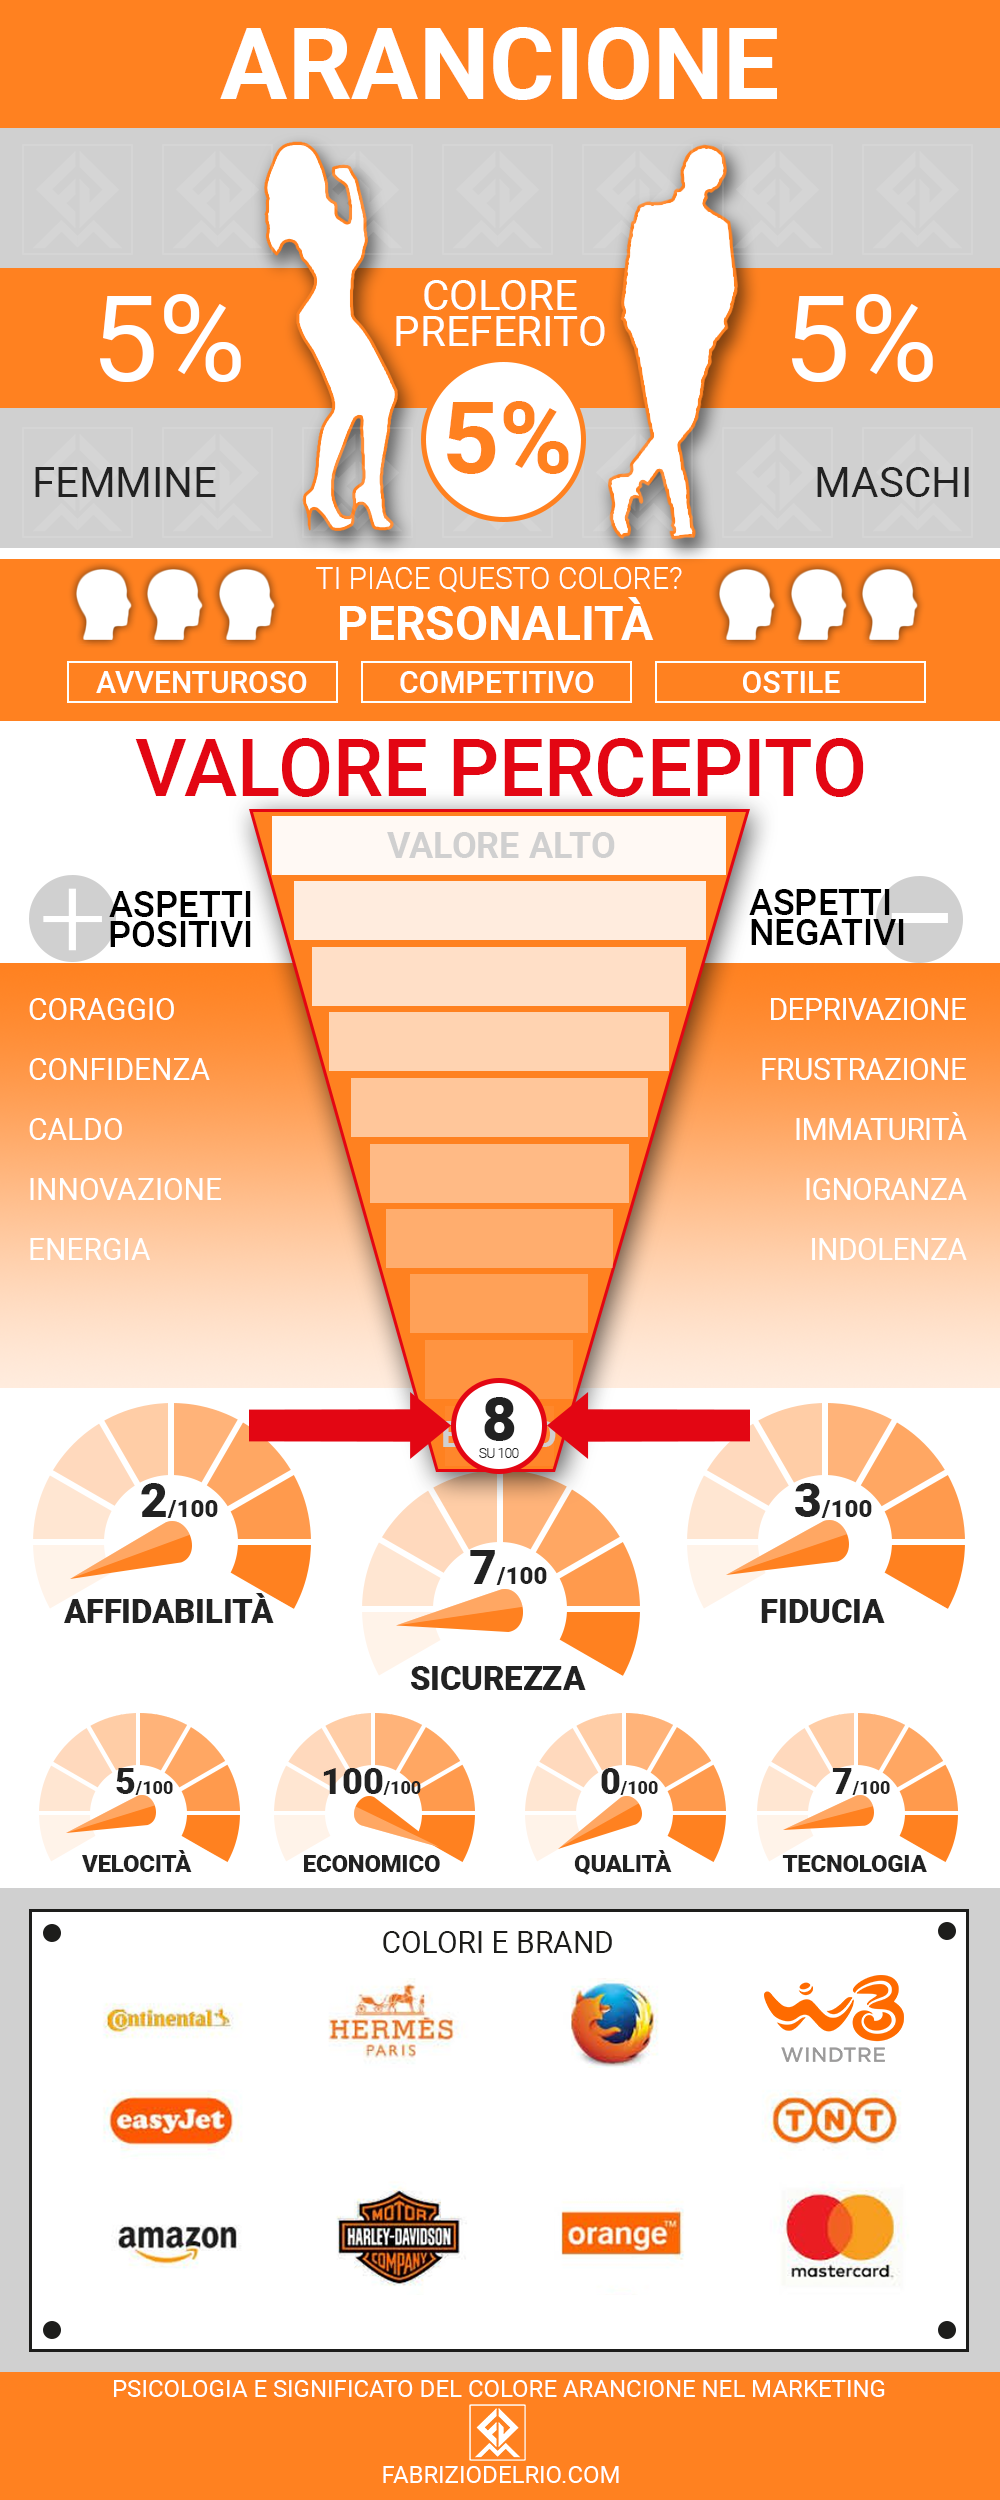 Psicologia e Significato del colore Arancione nel Marketing - infografica psicologia e significato del colore arancione nel marketing